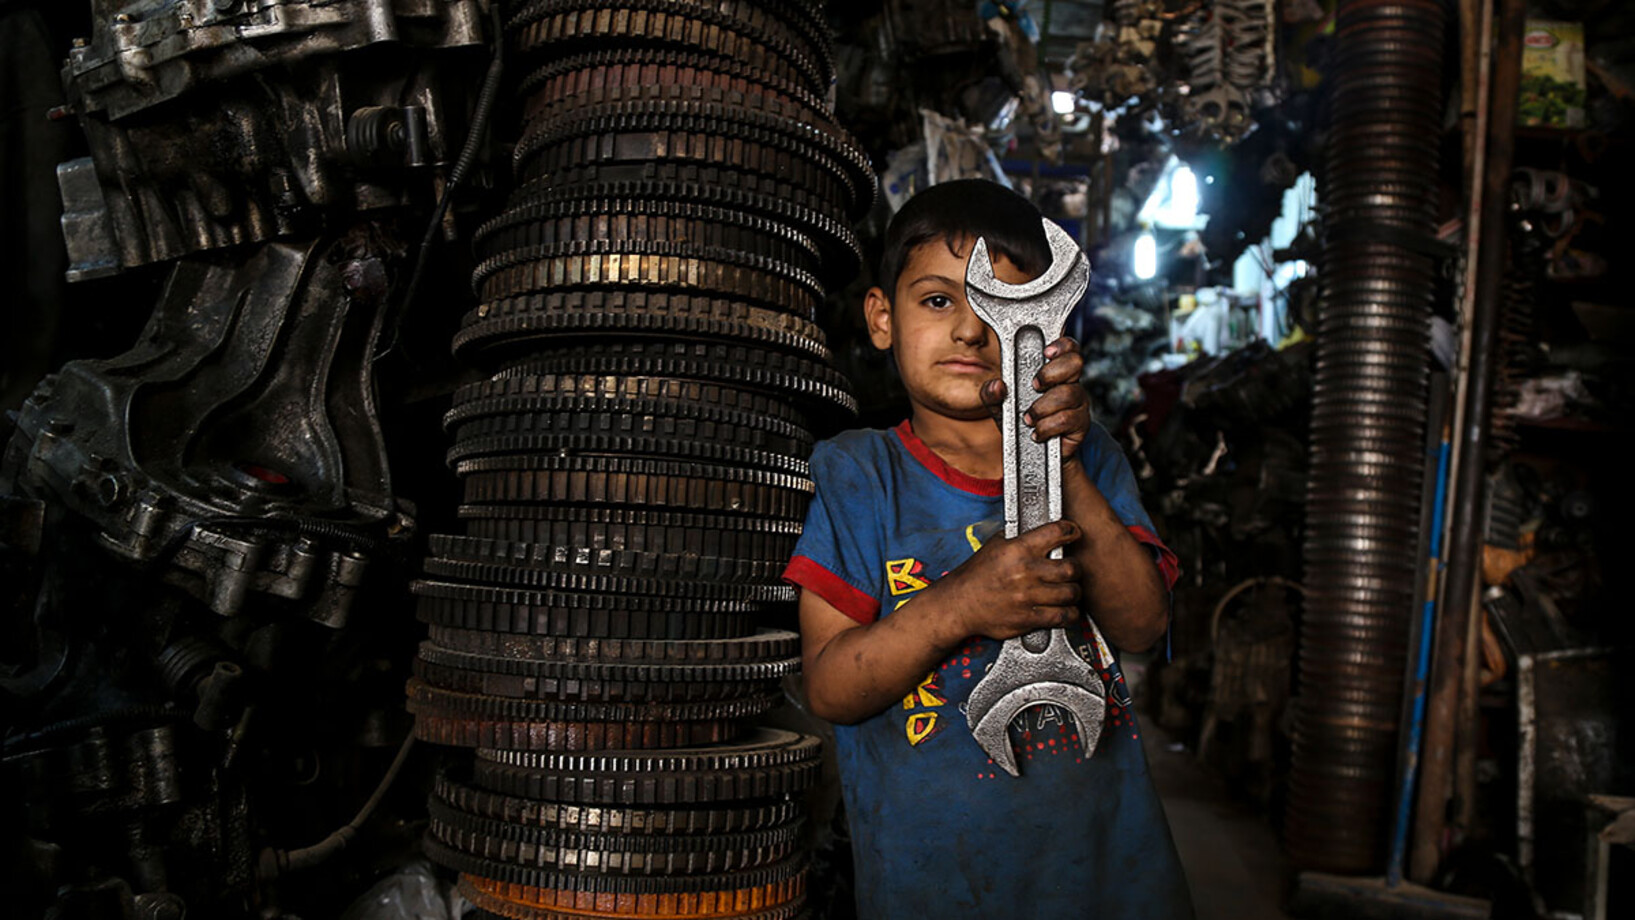 Ein kleiner Junge steht in einer Werkstatt und hält einen grossen Schraubenschlüssel in der Hand.